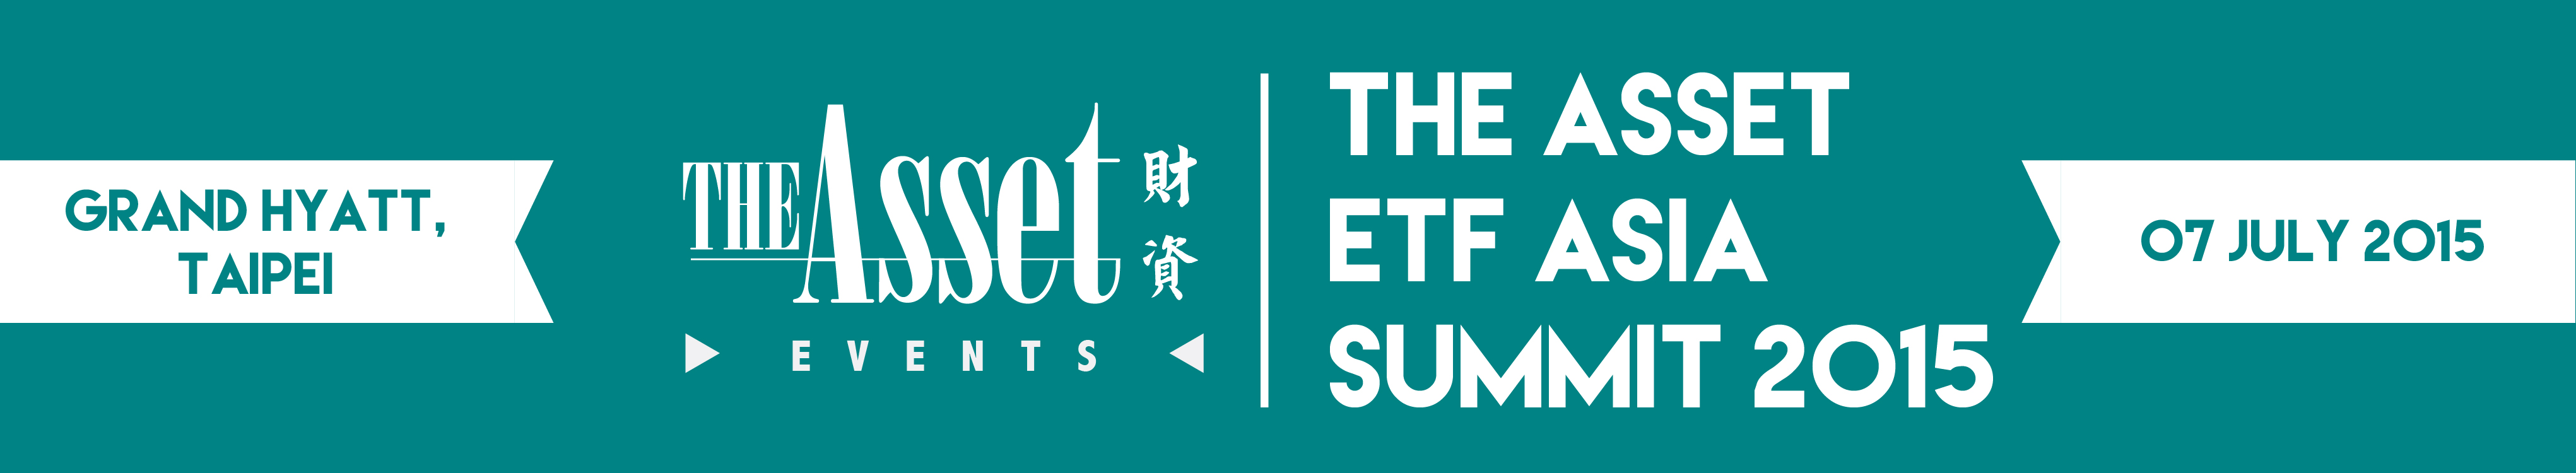 The Asset ETF Asia Summit